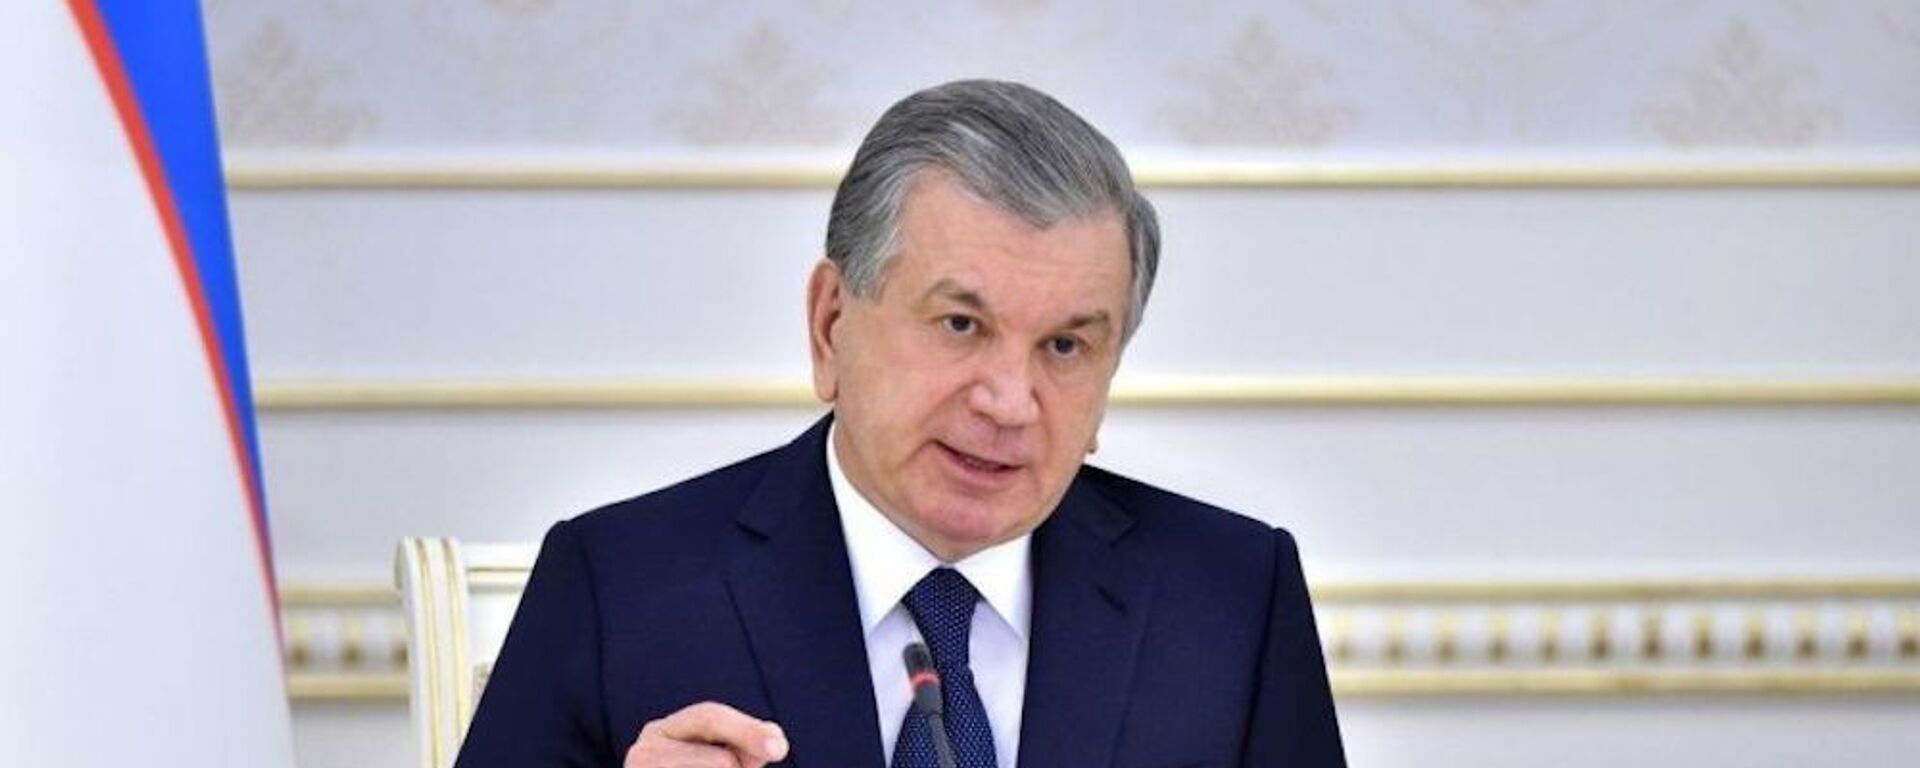 Шавкат Мирзиёев обсудил бюджет на 2021 год - Sputnik Узбекистан, 1920, 19.10.2020